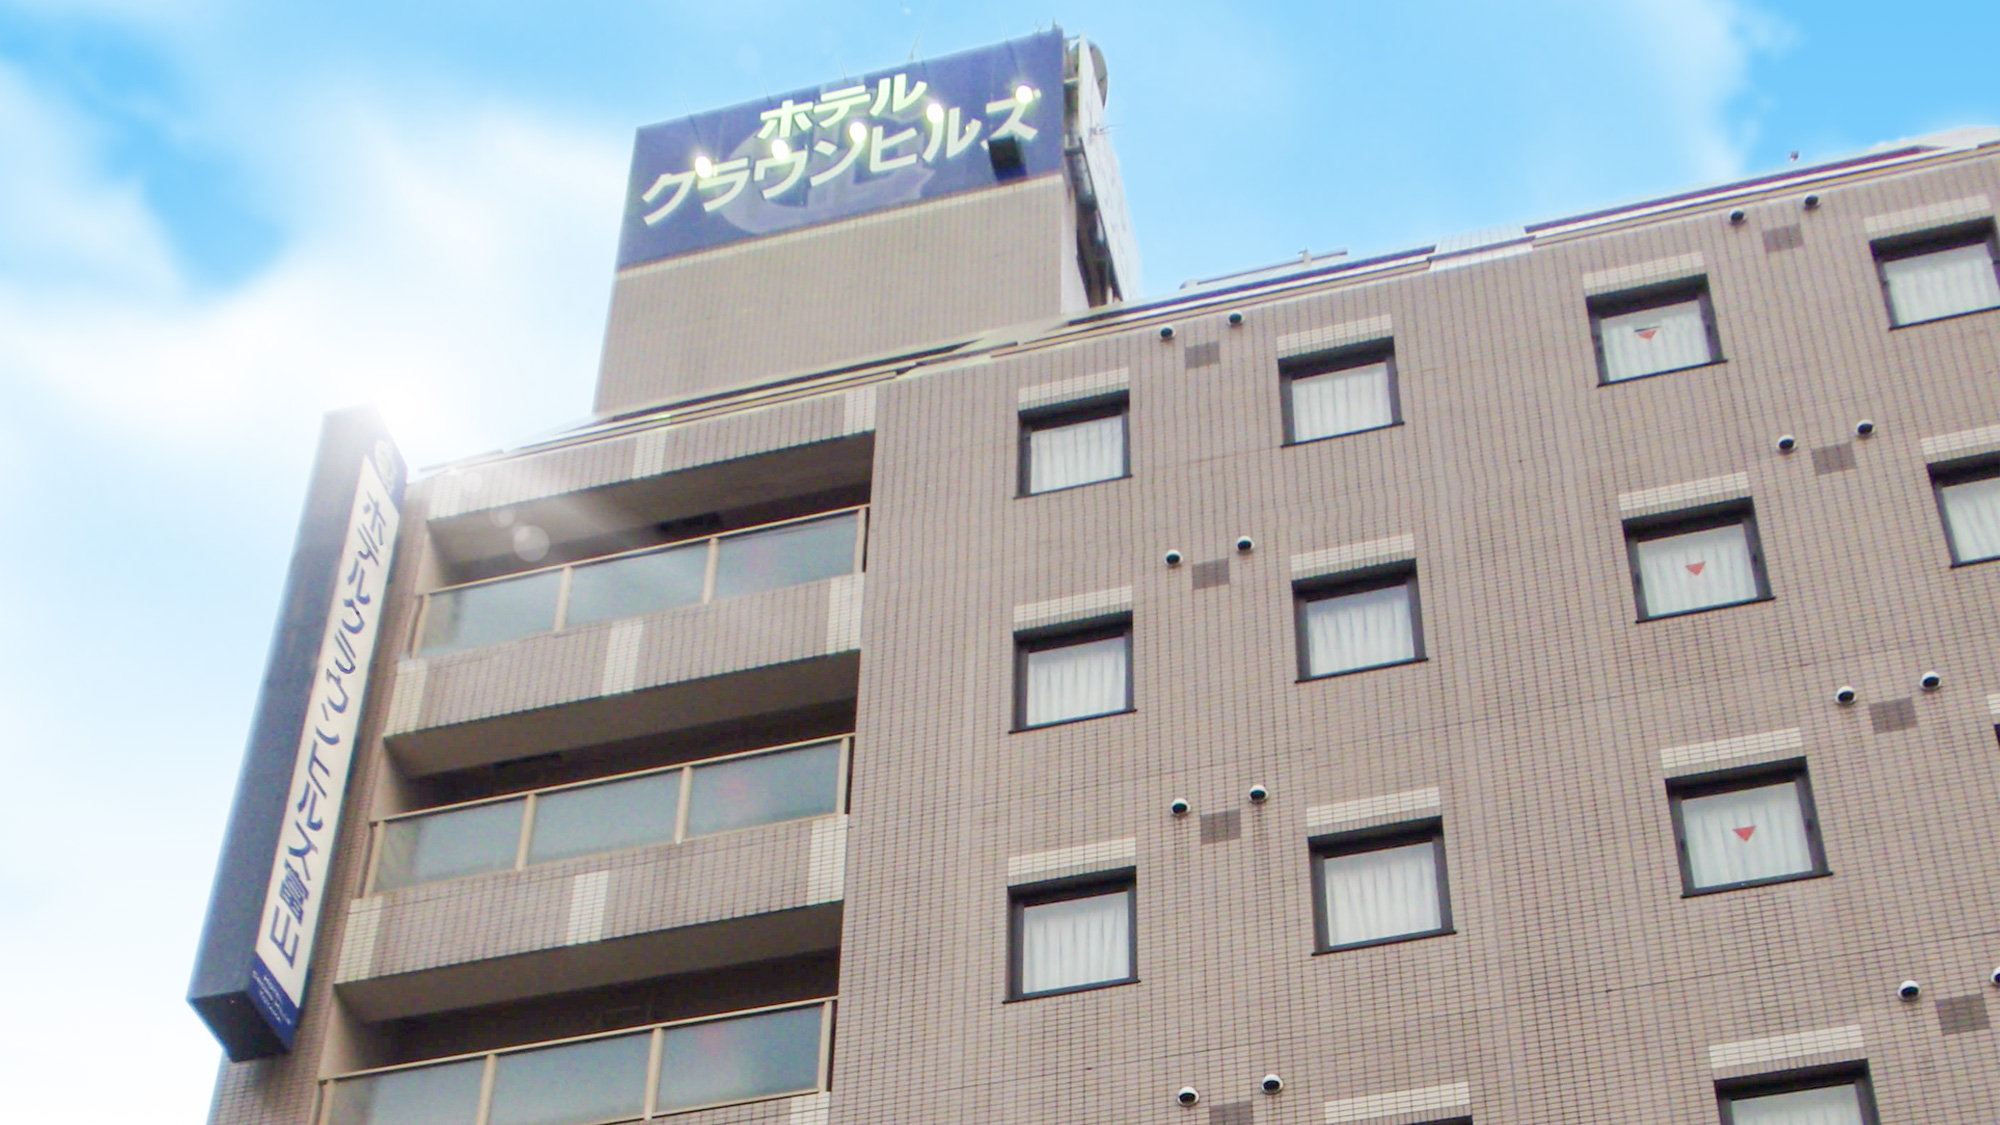 ホテルクラウンヒルズ富山 桜町(BBHホテルグループ) image